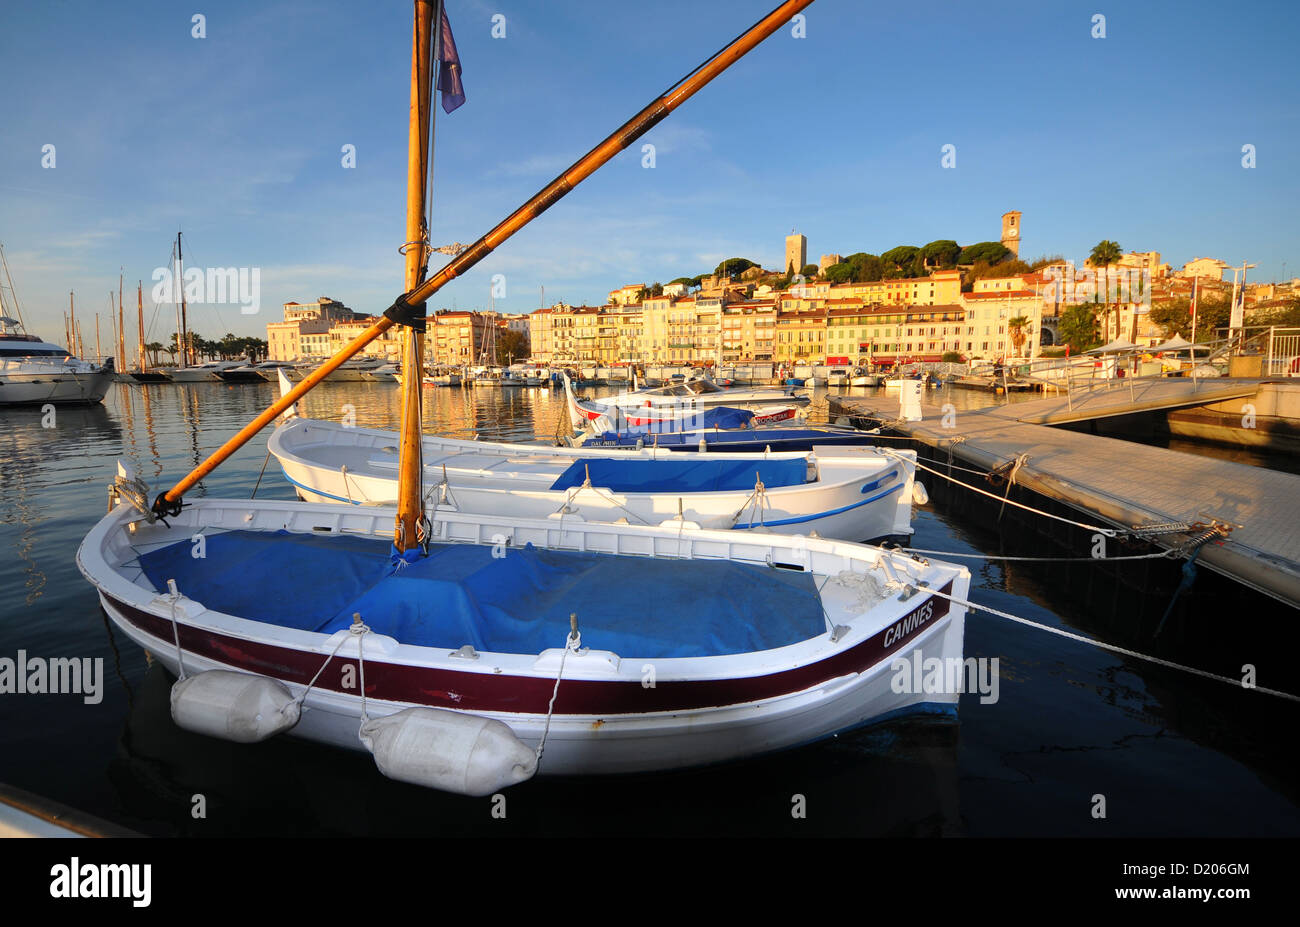 Bateaux sur le vieux port, Cannes, Cote d'Azur, France, Europe du Sud Banque D'Images